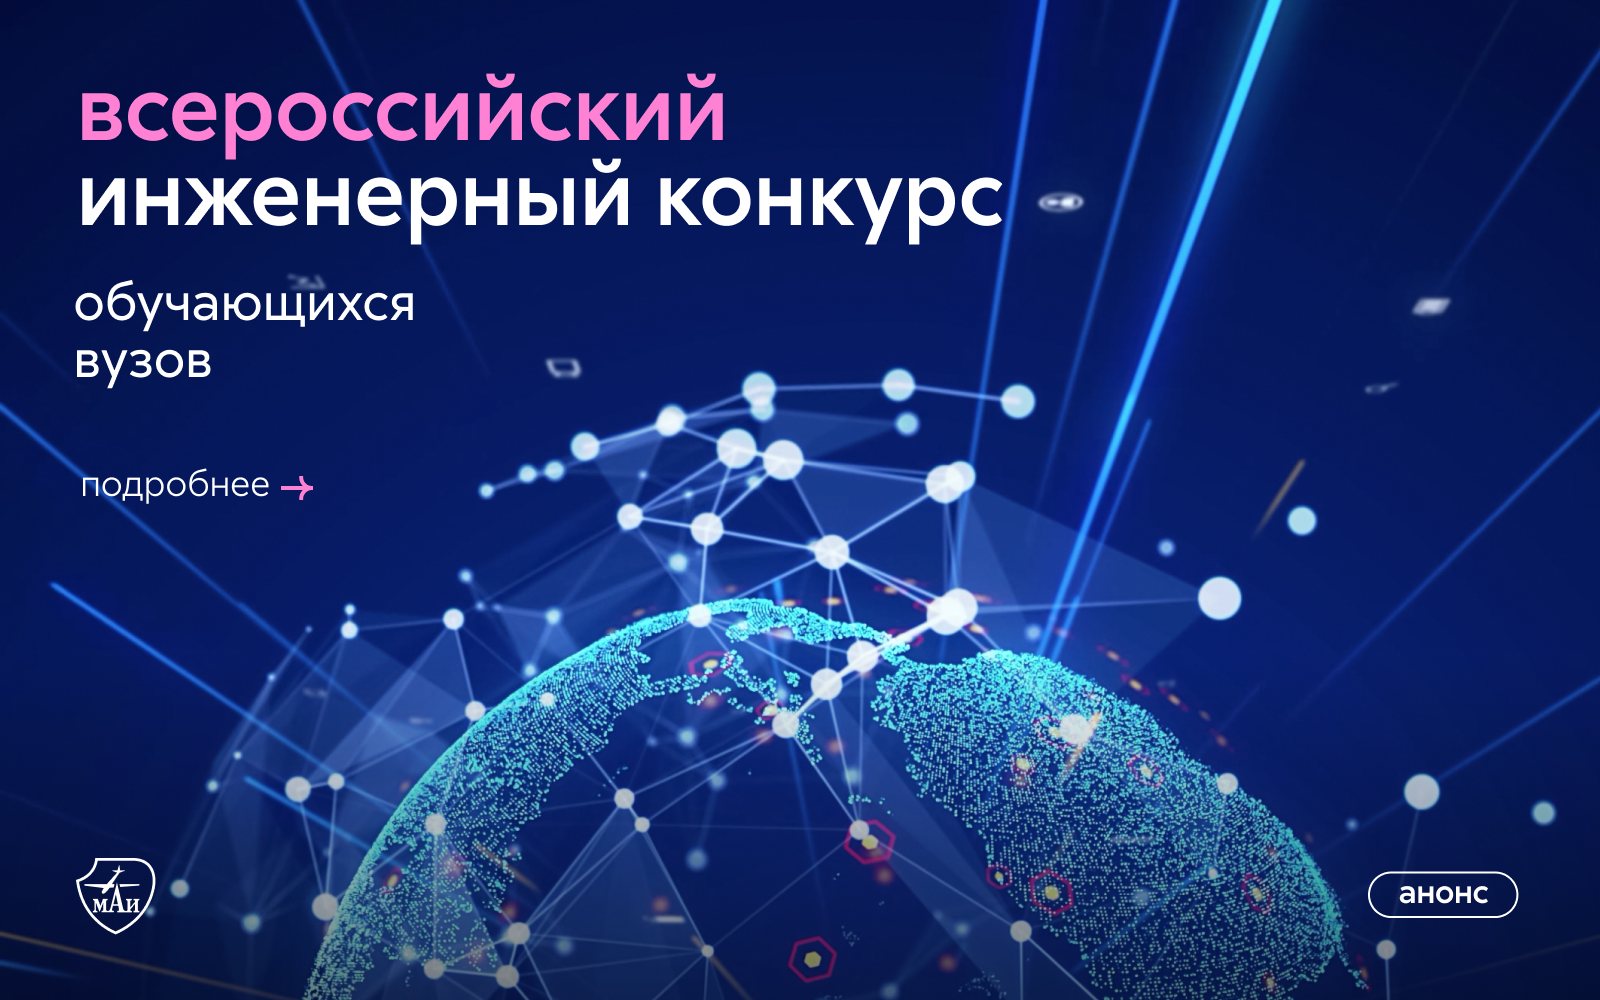 Всероссийский инженерный конкурс обучающихся образовательных учреждений высшего образования